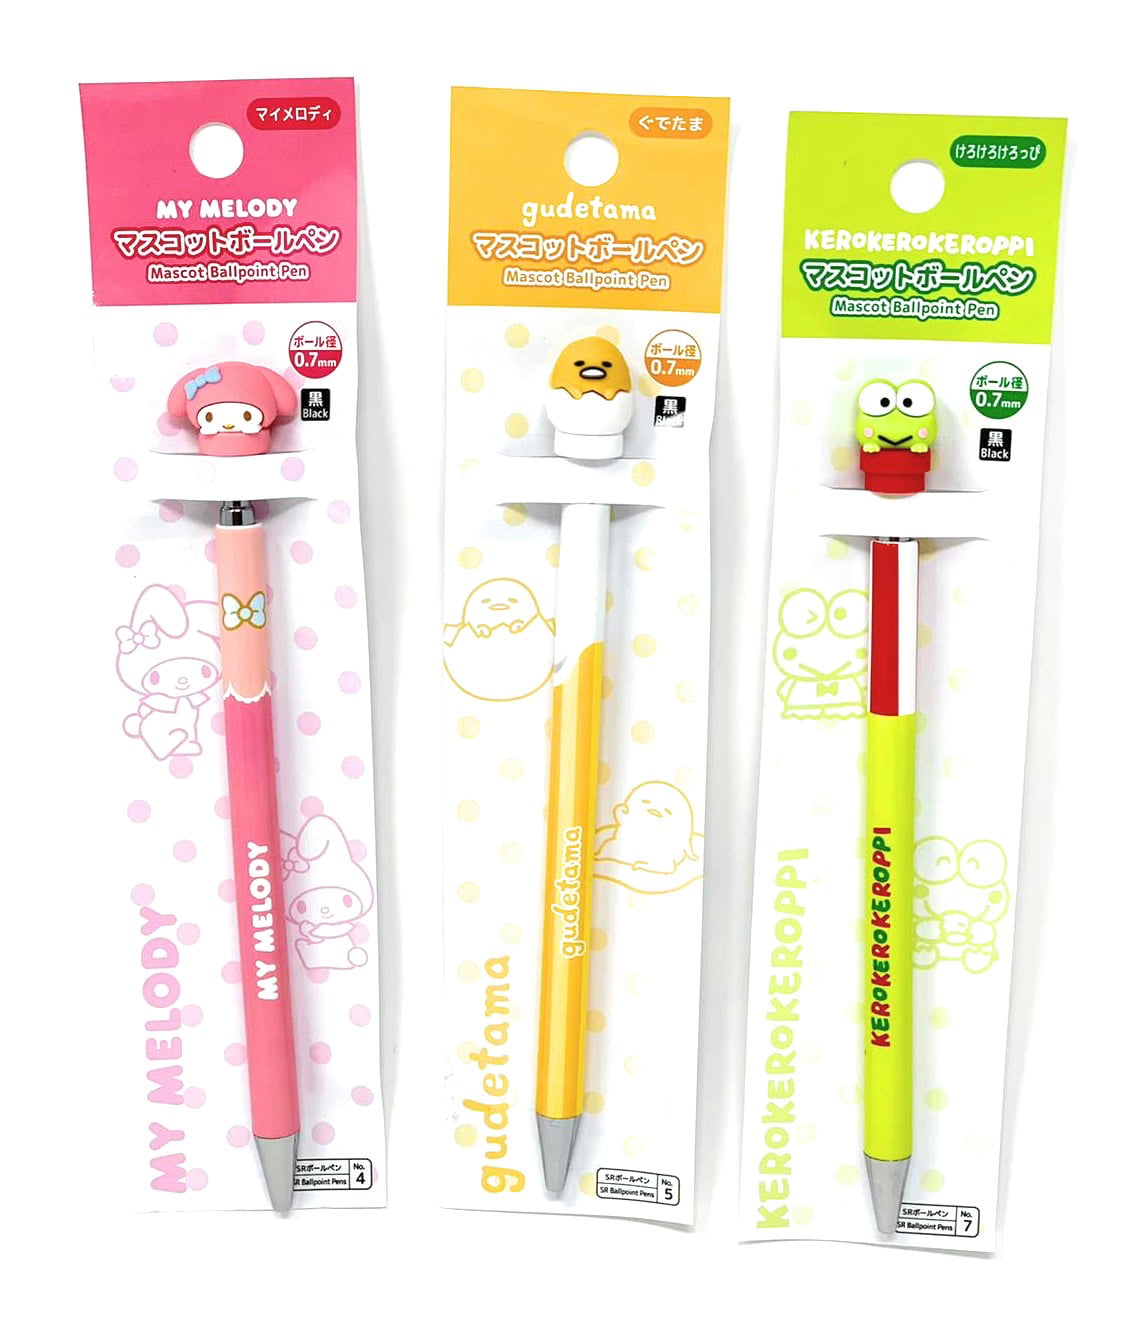 Ribbon Japan Sanrio Hello Kitty 2 Color Ballpoint Pen 